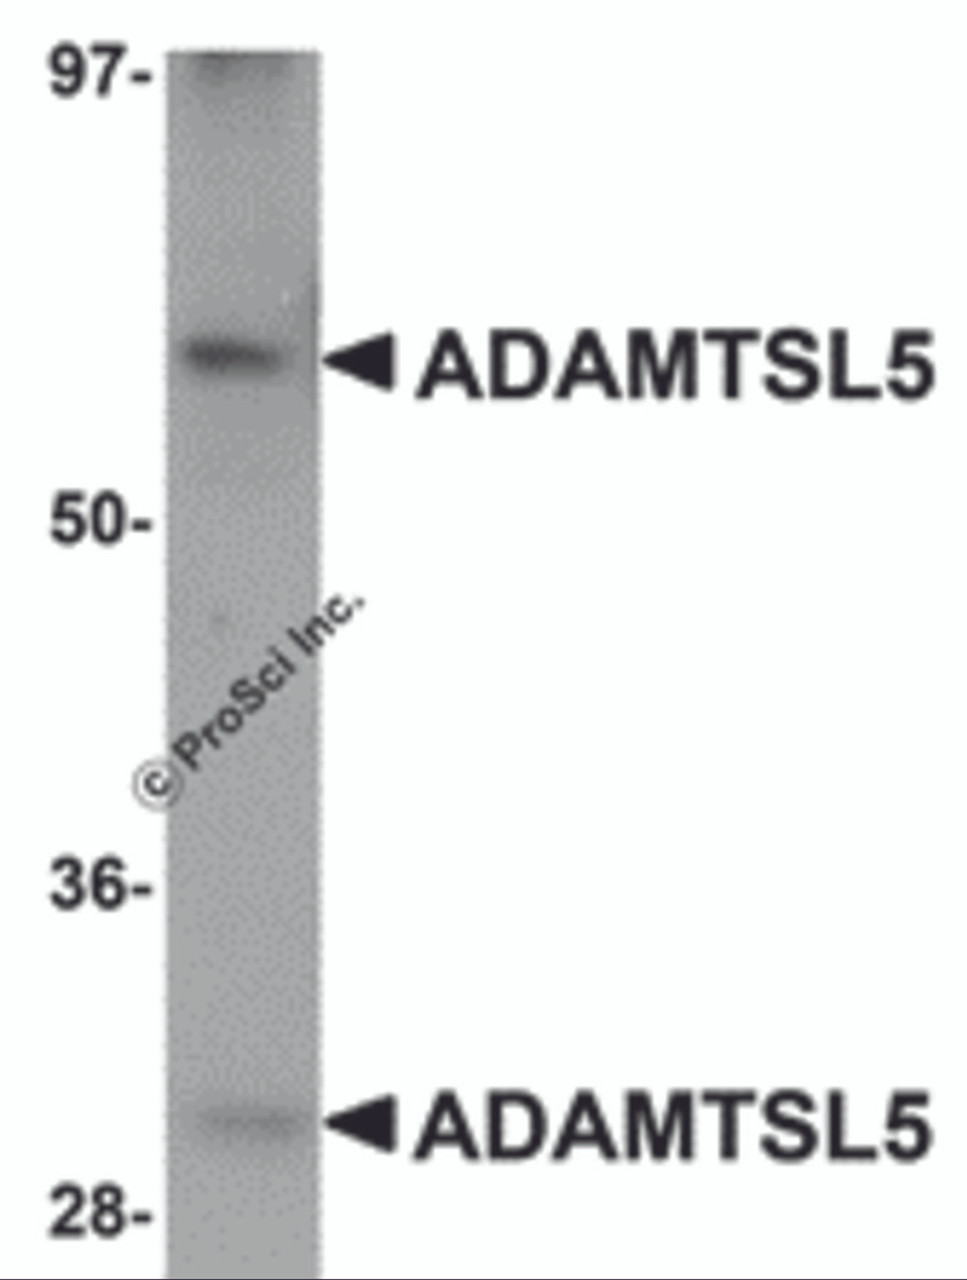 Western blot analysis of ADAMTSL5 in human skeletal muscle tissue lysate with ADAMTSL5 antibody at 1 &#956;g/mL.